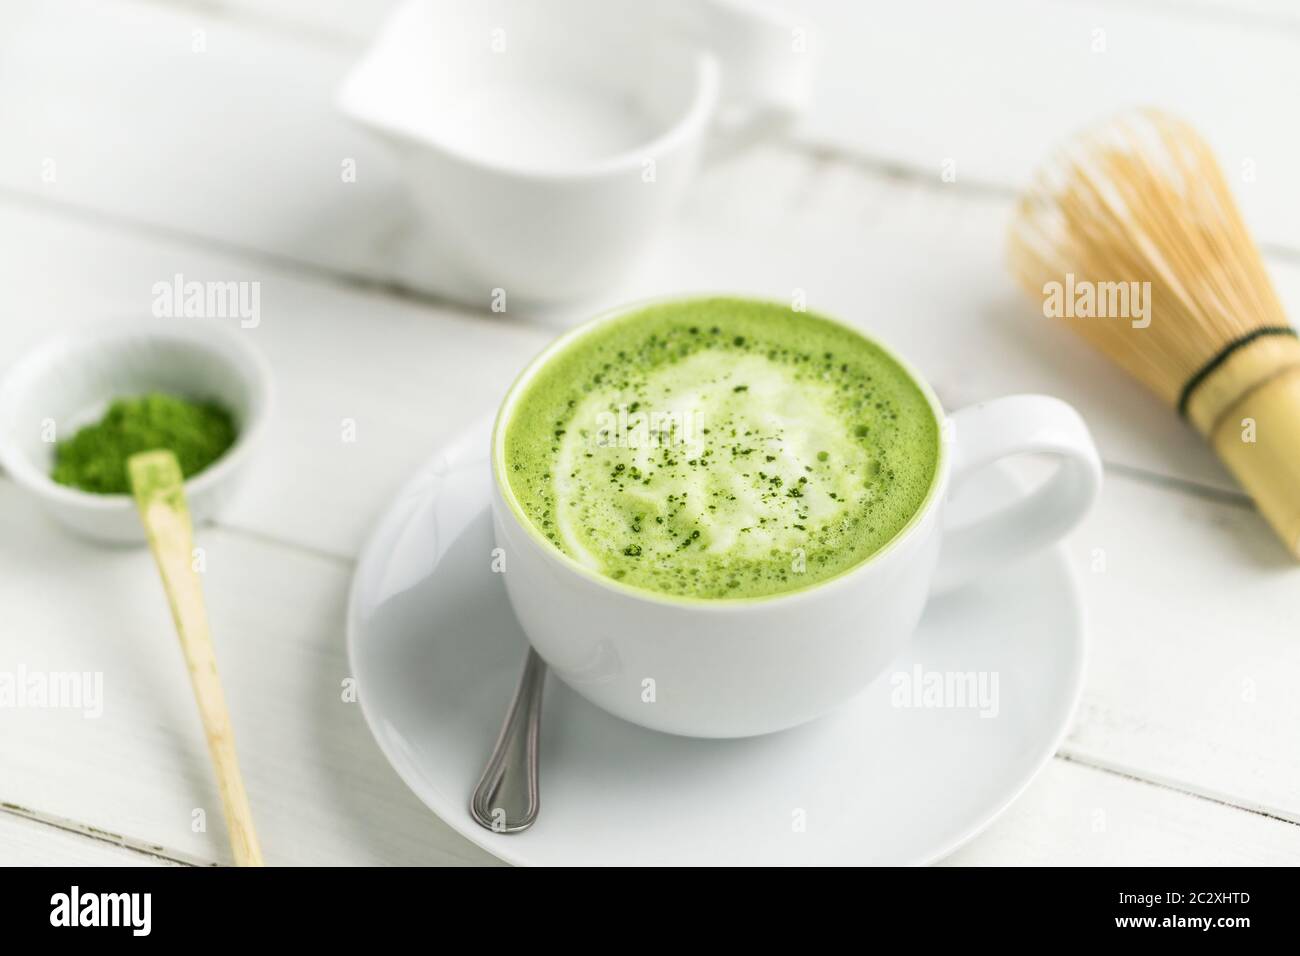 Grüner Tee Matcha Latte Tasse auf weißem Hintergrund. Dieser Latte ist eine köstliche Art, die Energie zu steigern und die gesunden Vorteile von Matcha zu genießen. Stockfoto